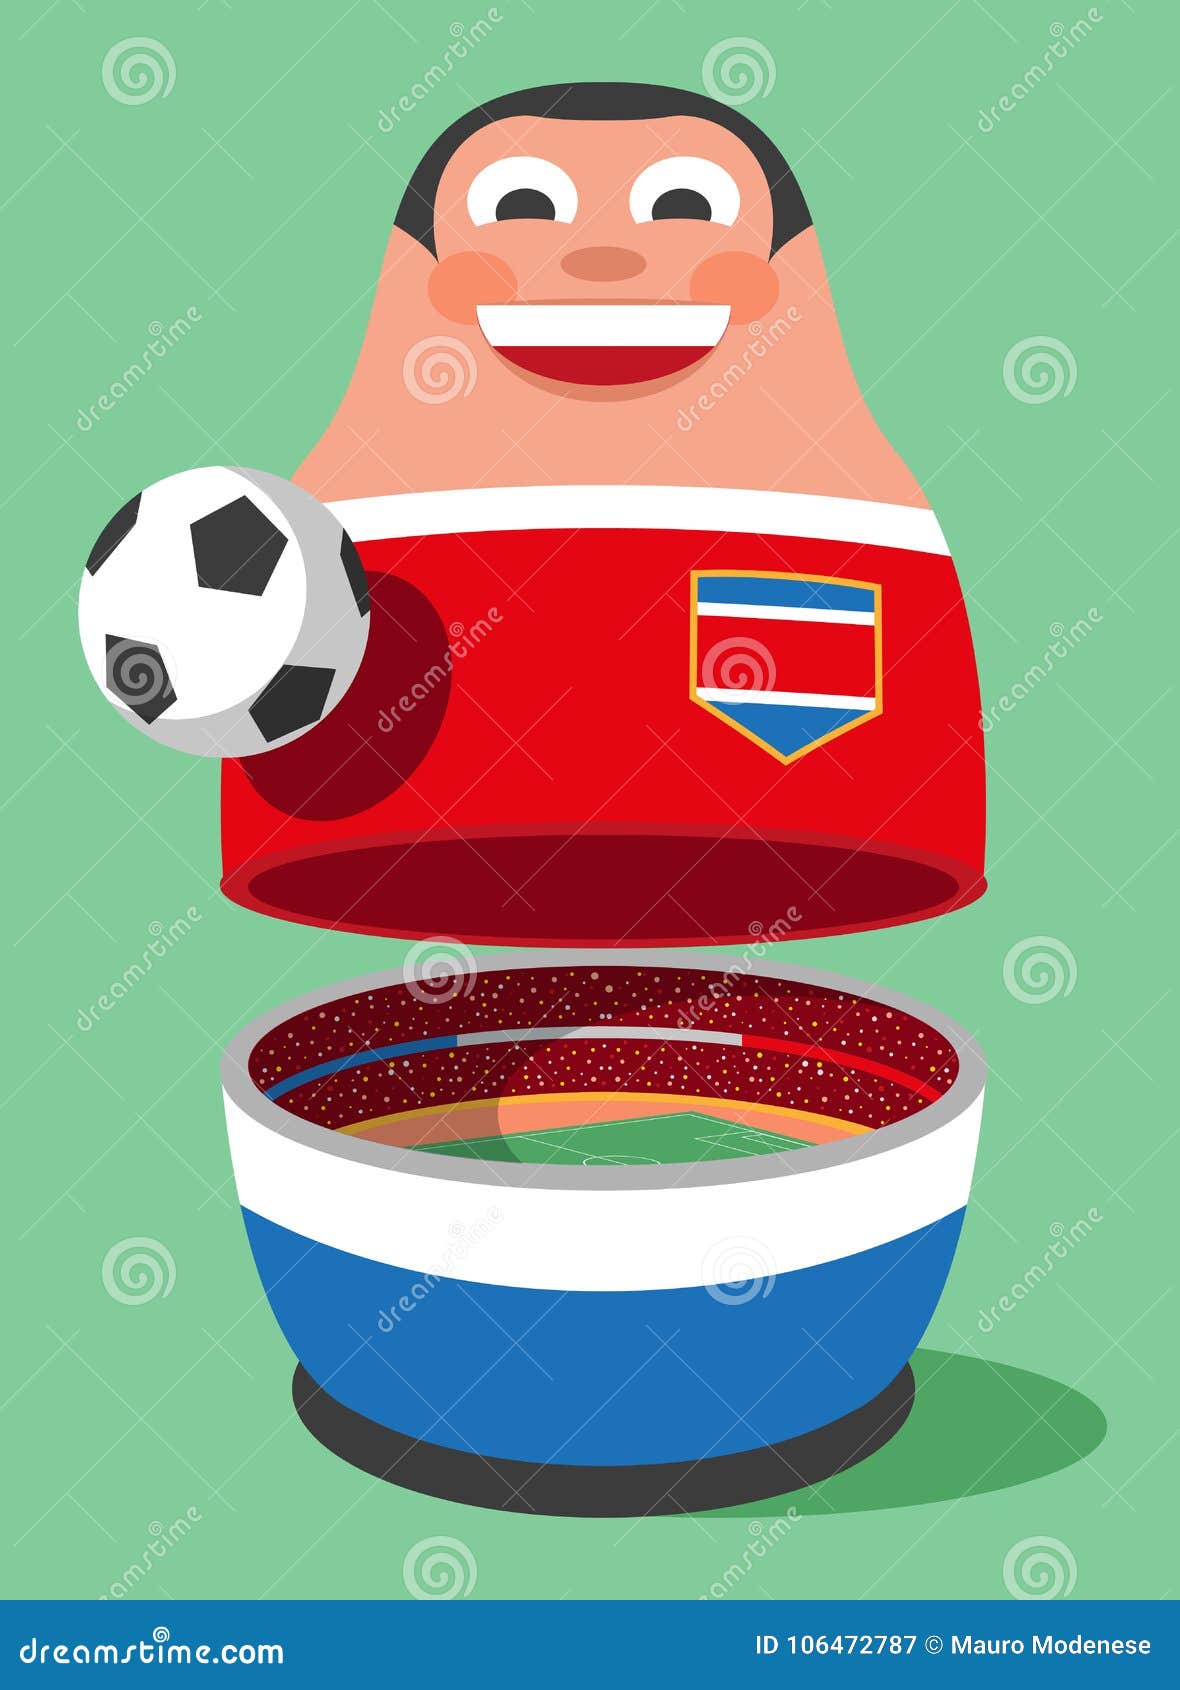 costarica cute cartoon soccer mascot